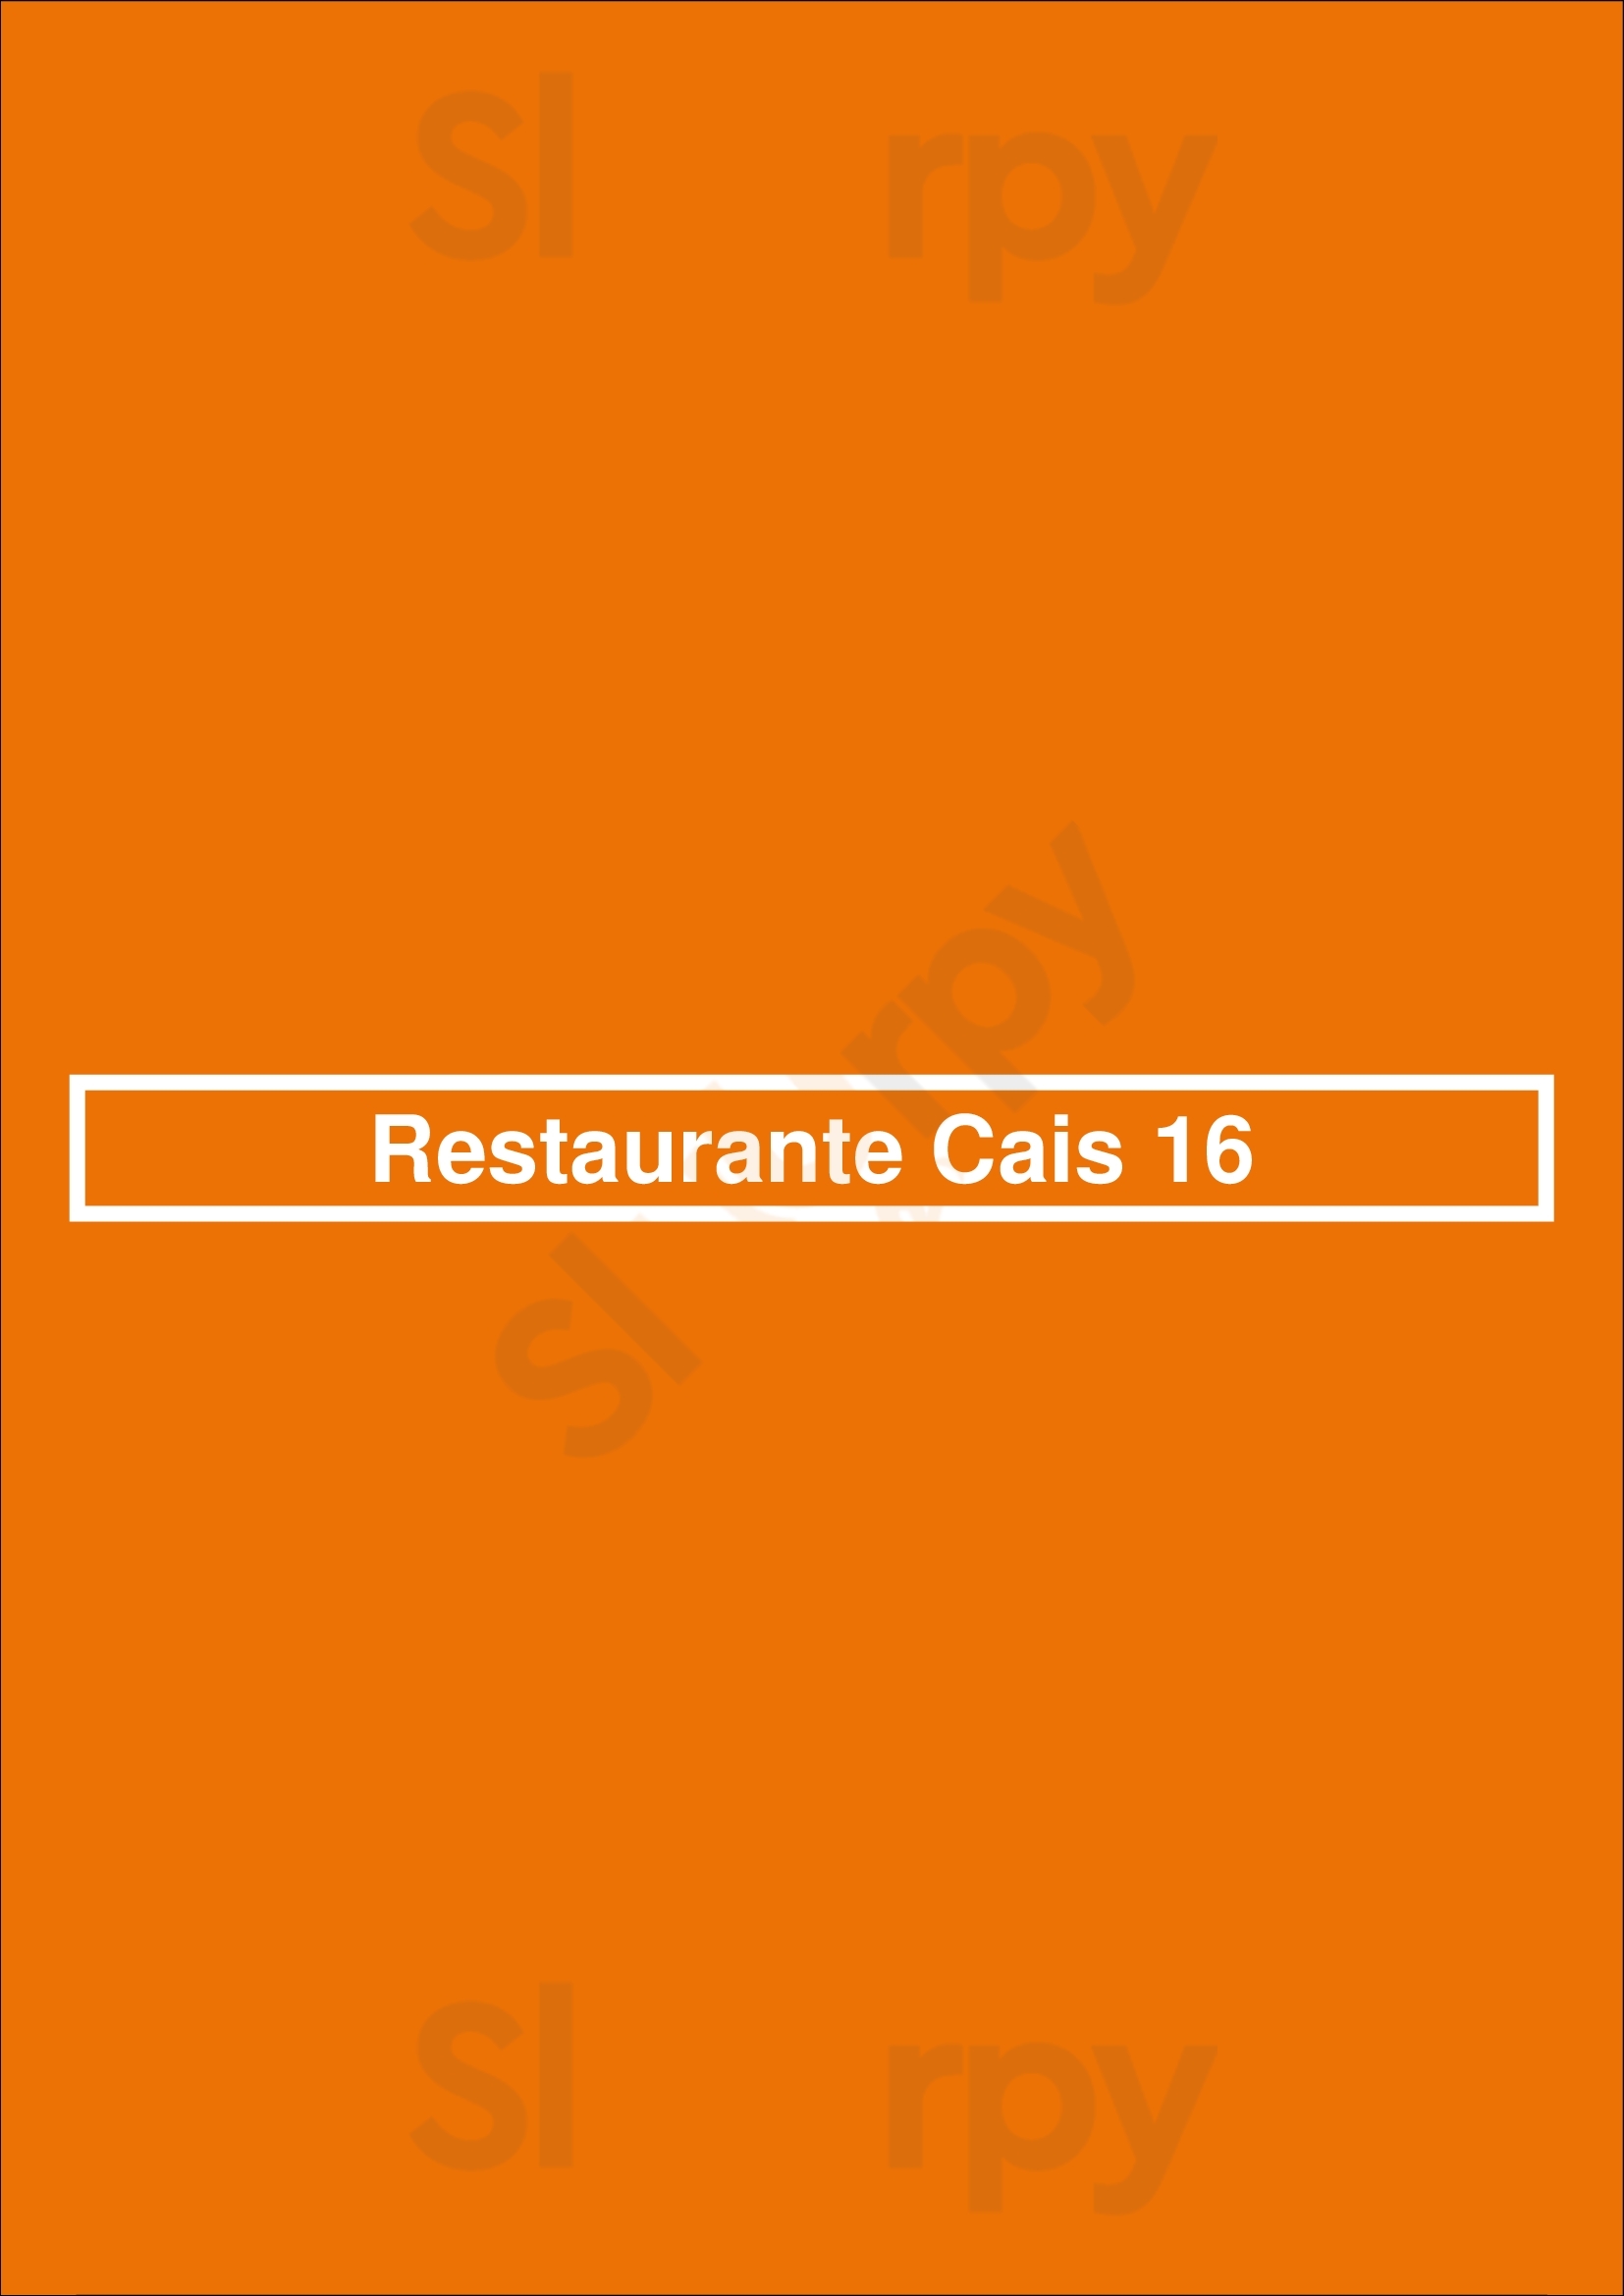 Restaurante Cais 16 Lisboa Menu - 1